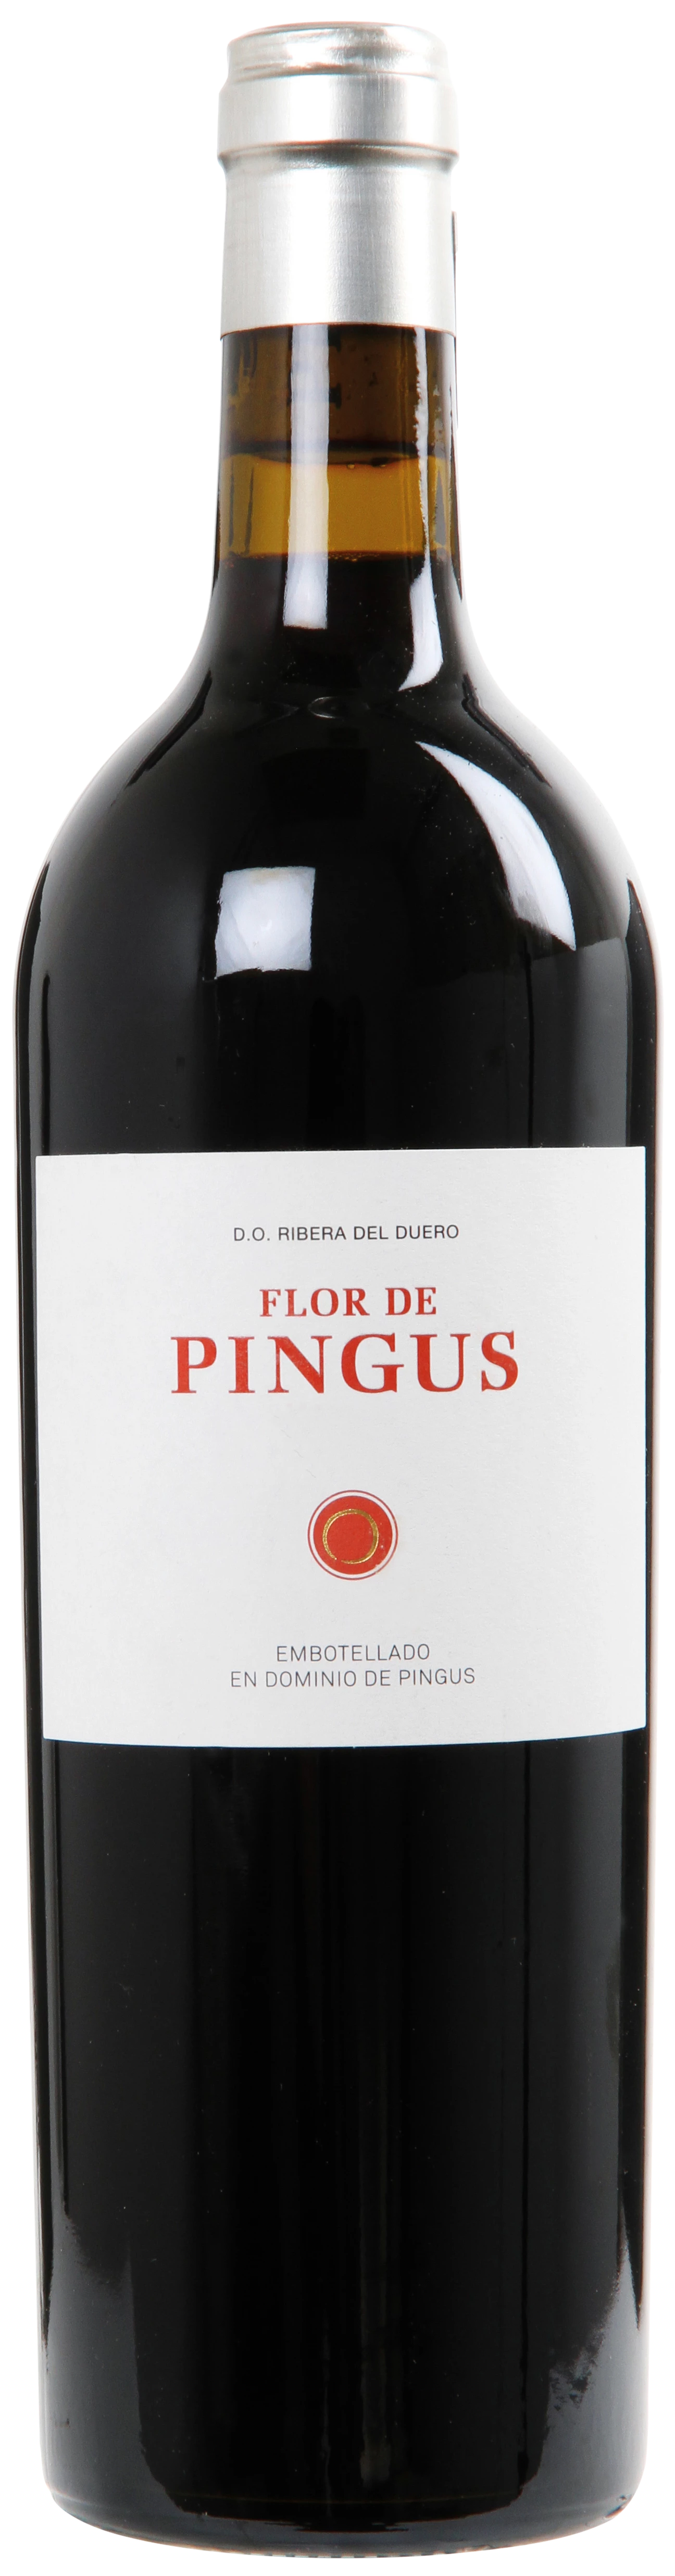 Løgismose Rødvin Domino de Pingus Ribera del Duero Flor de Pingus 2017 - 211312